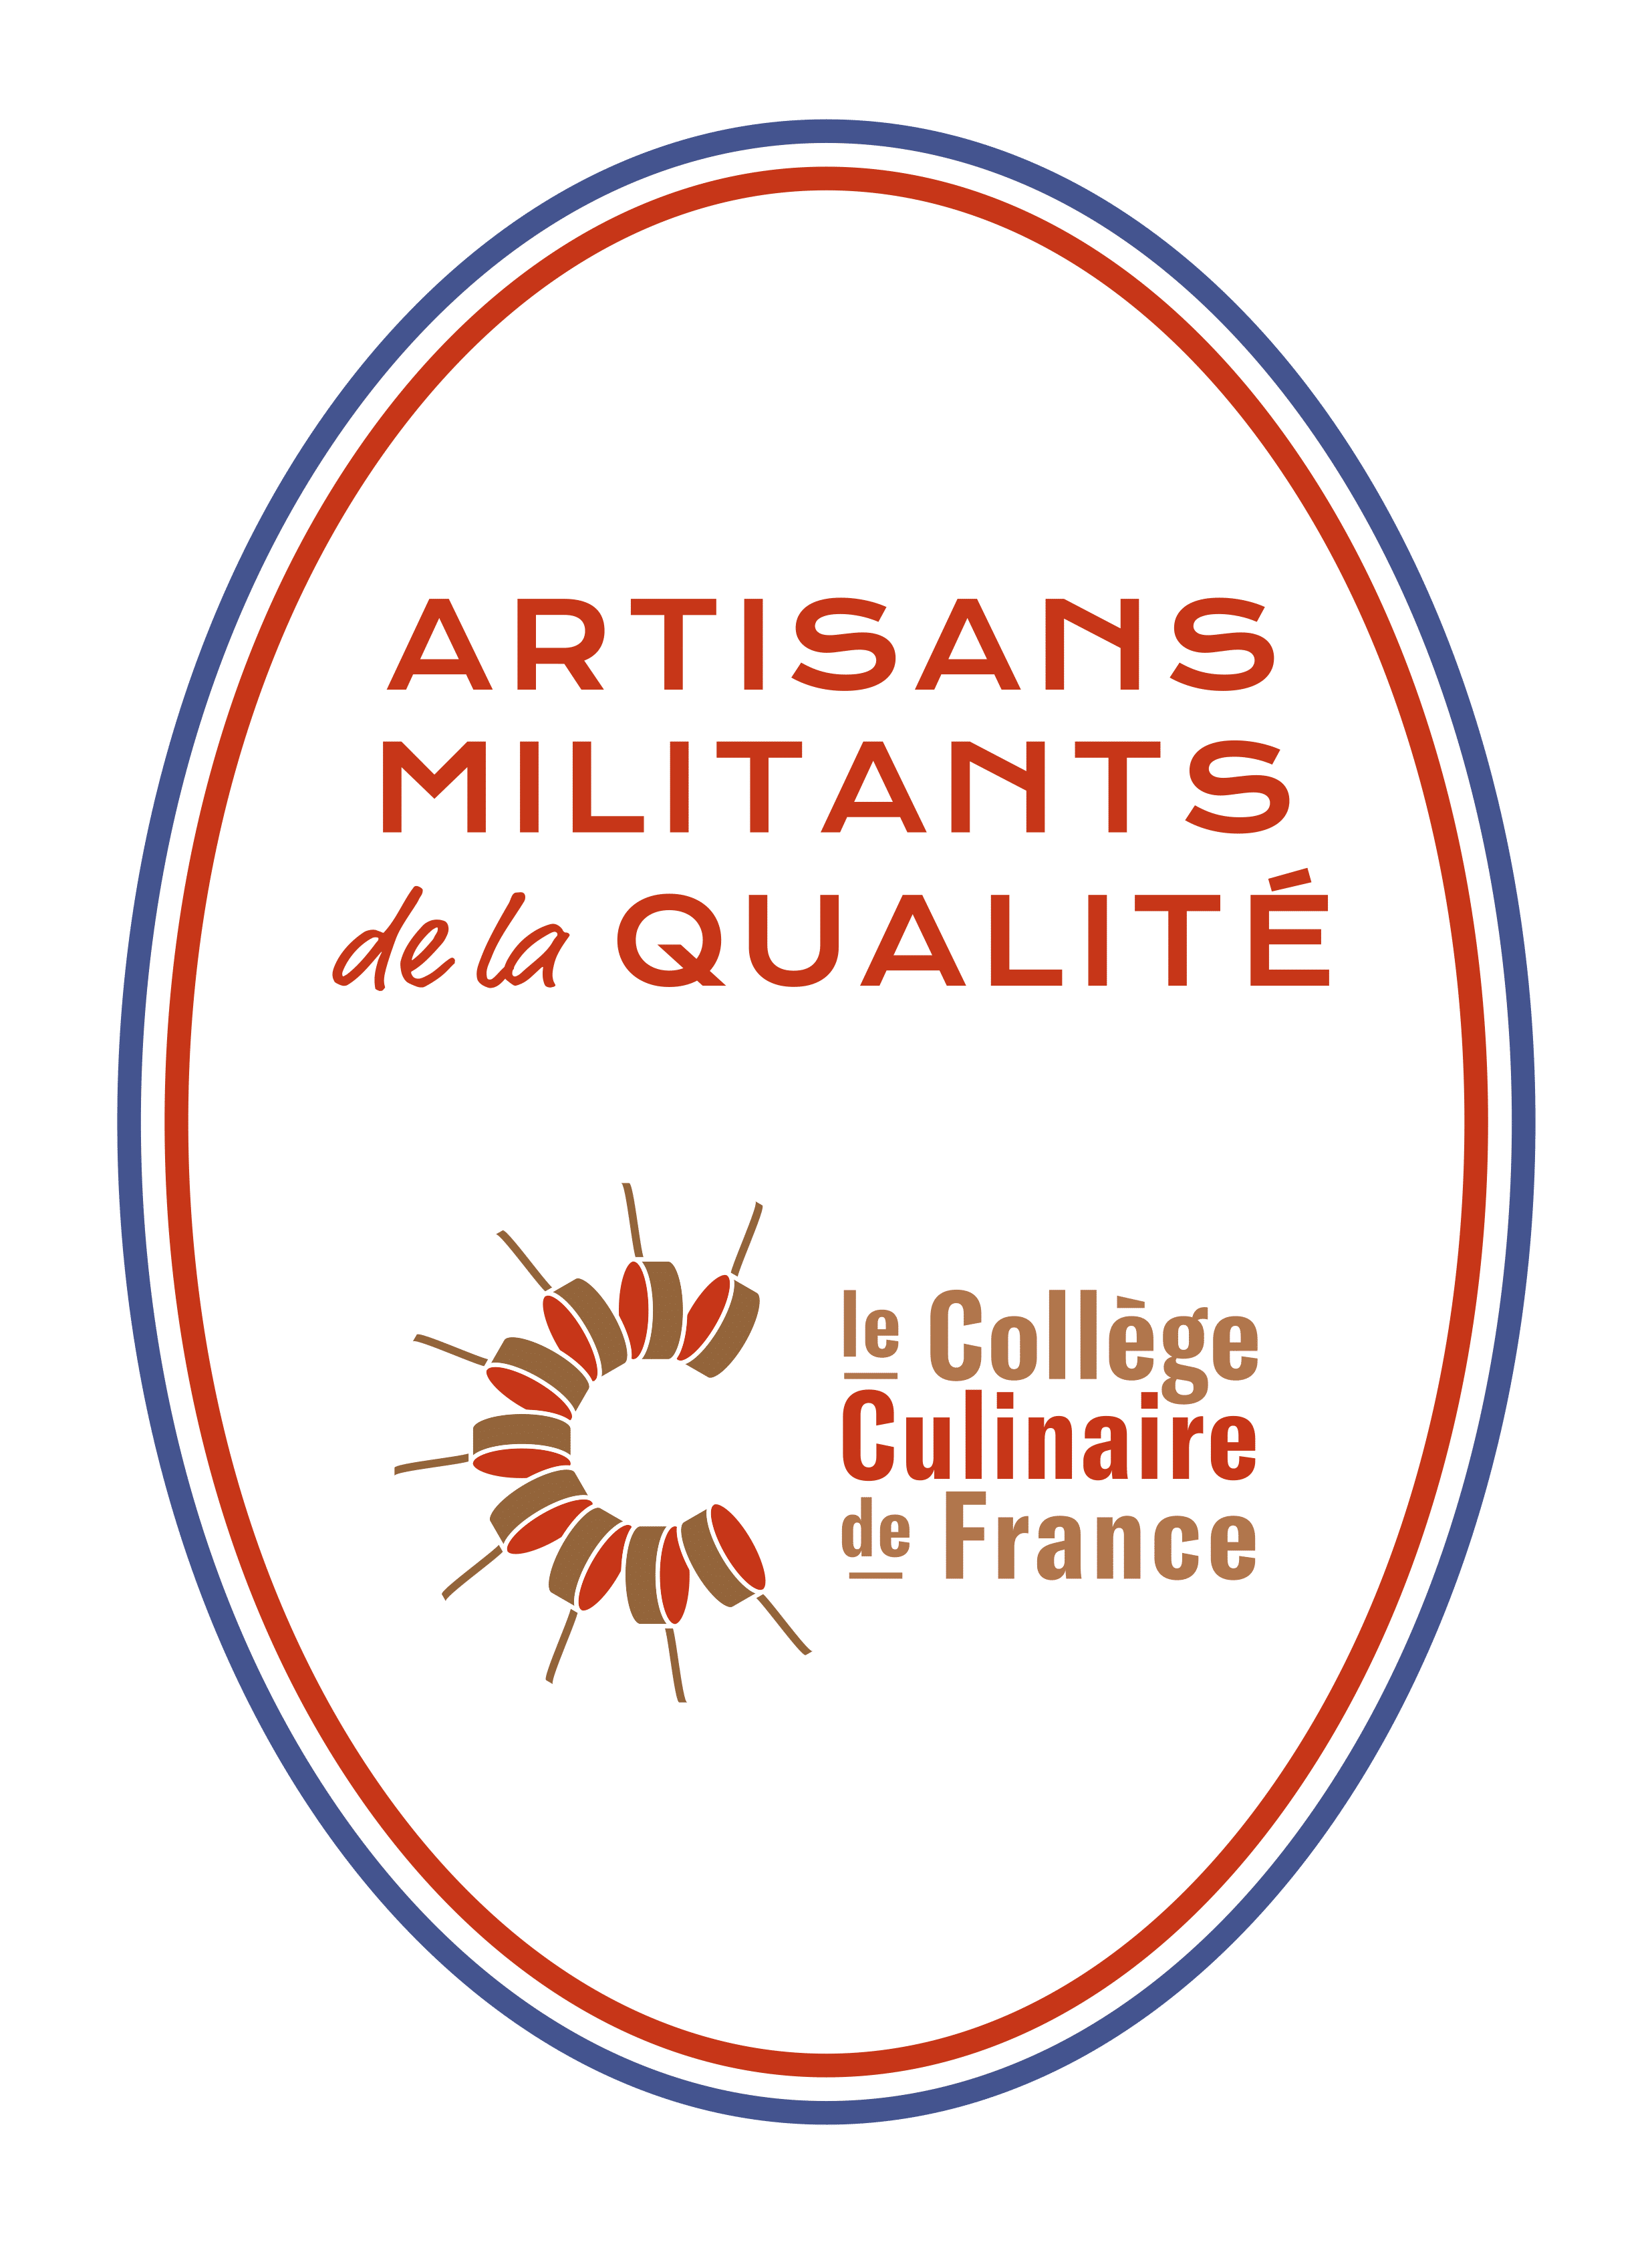 plaque du collège culinaire de france indiquant artisans militants de la qualité